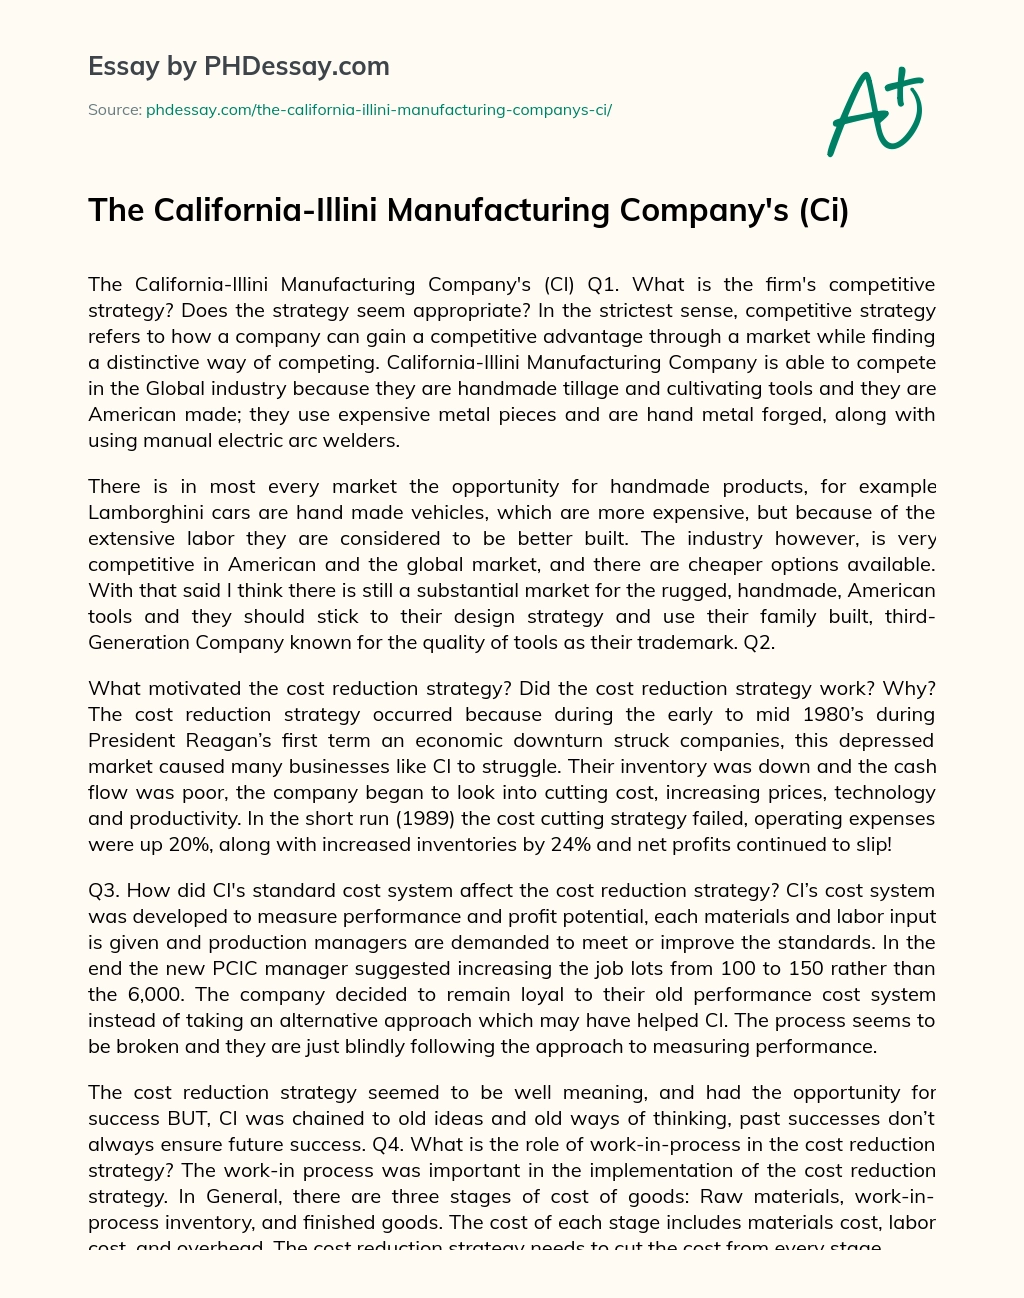 The California-Illini Manufacturing Company’s (Ci) essay